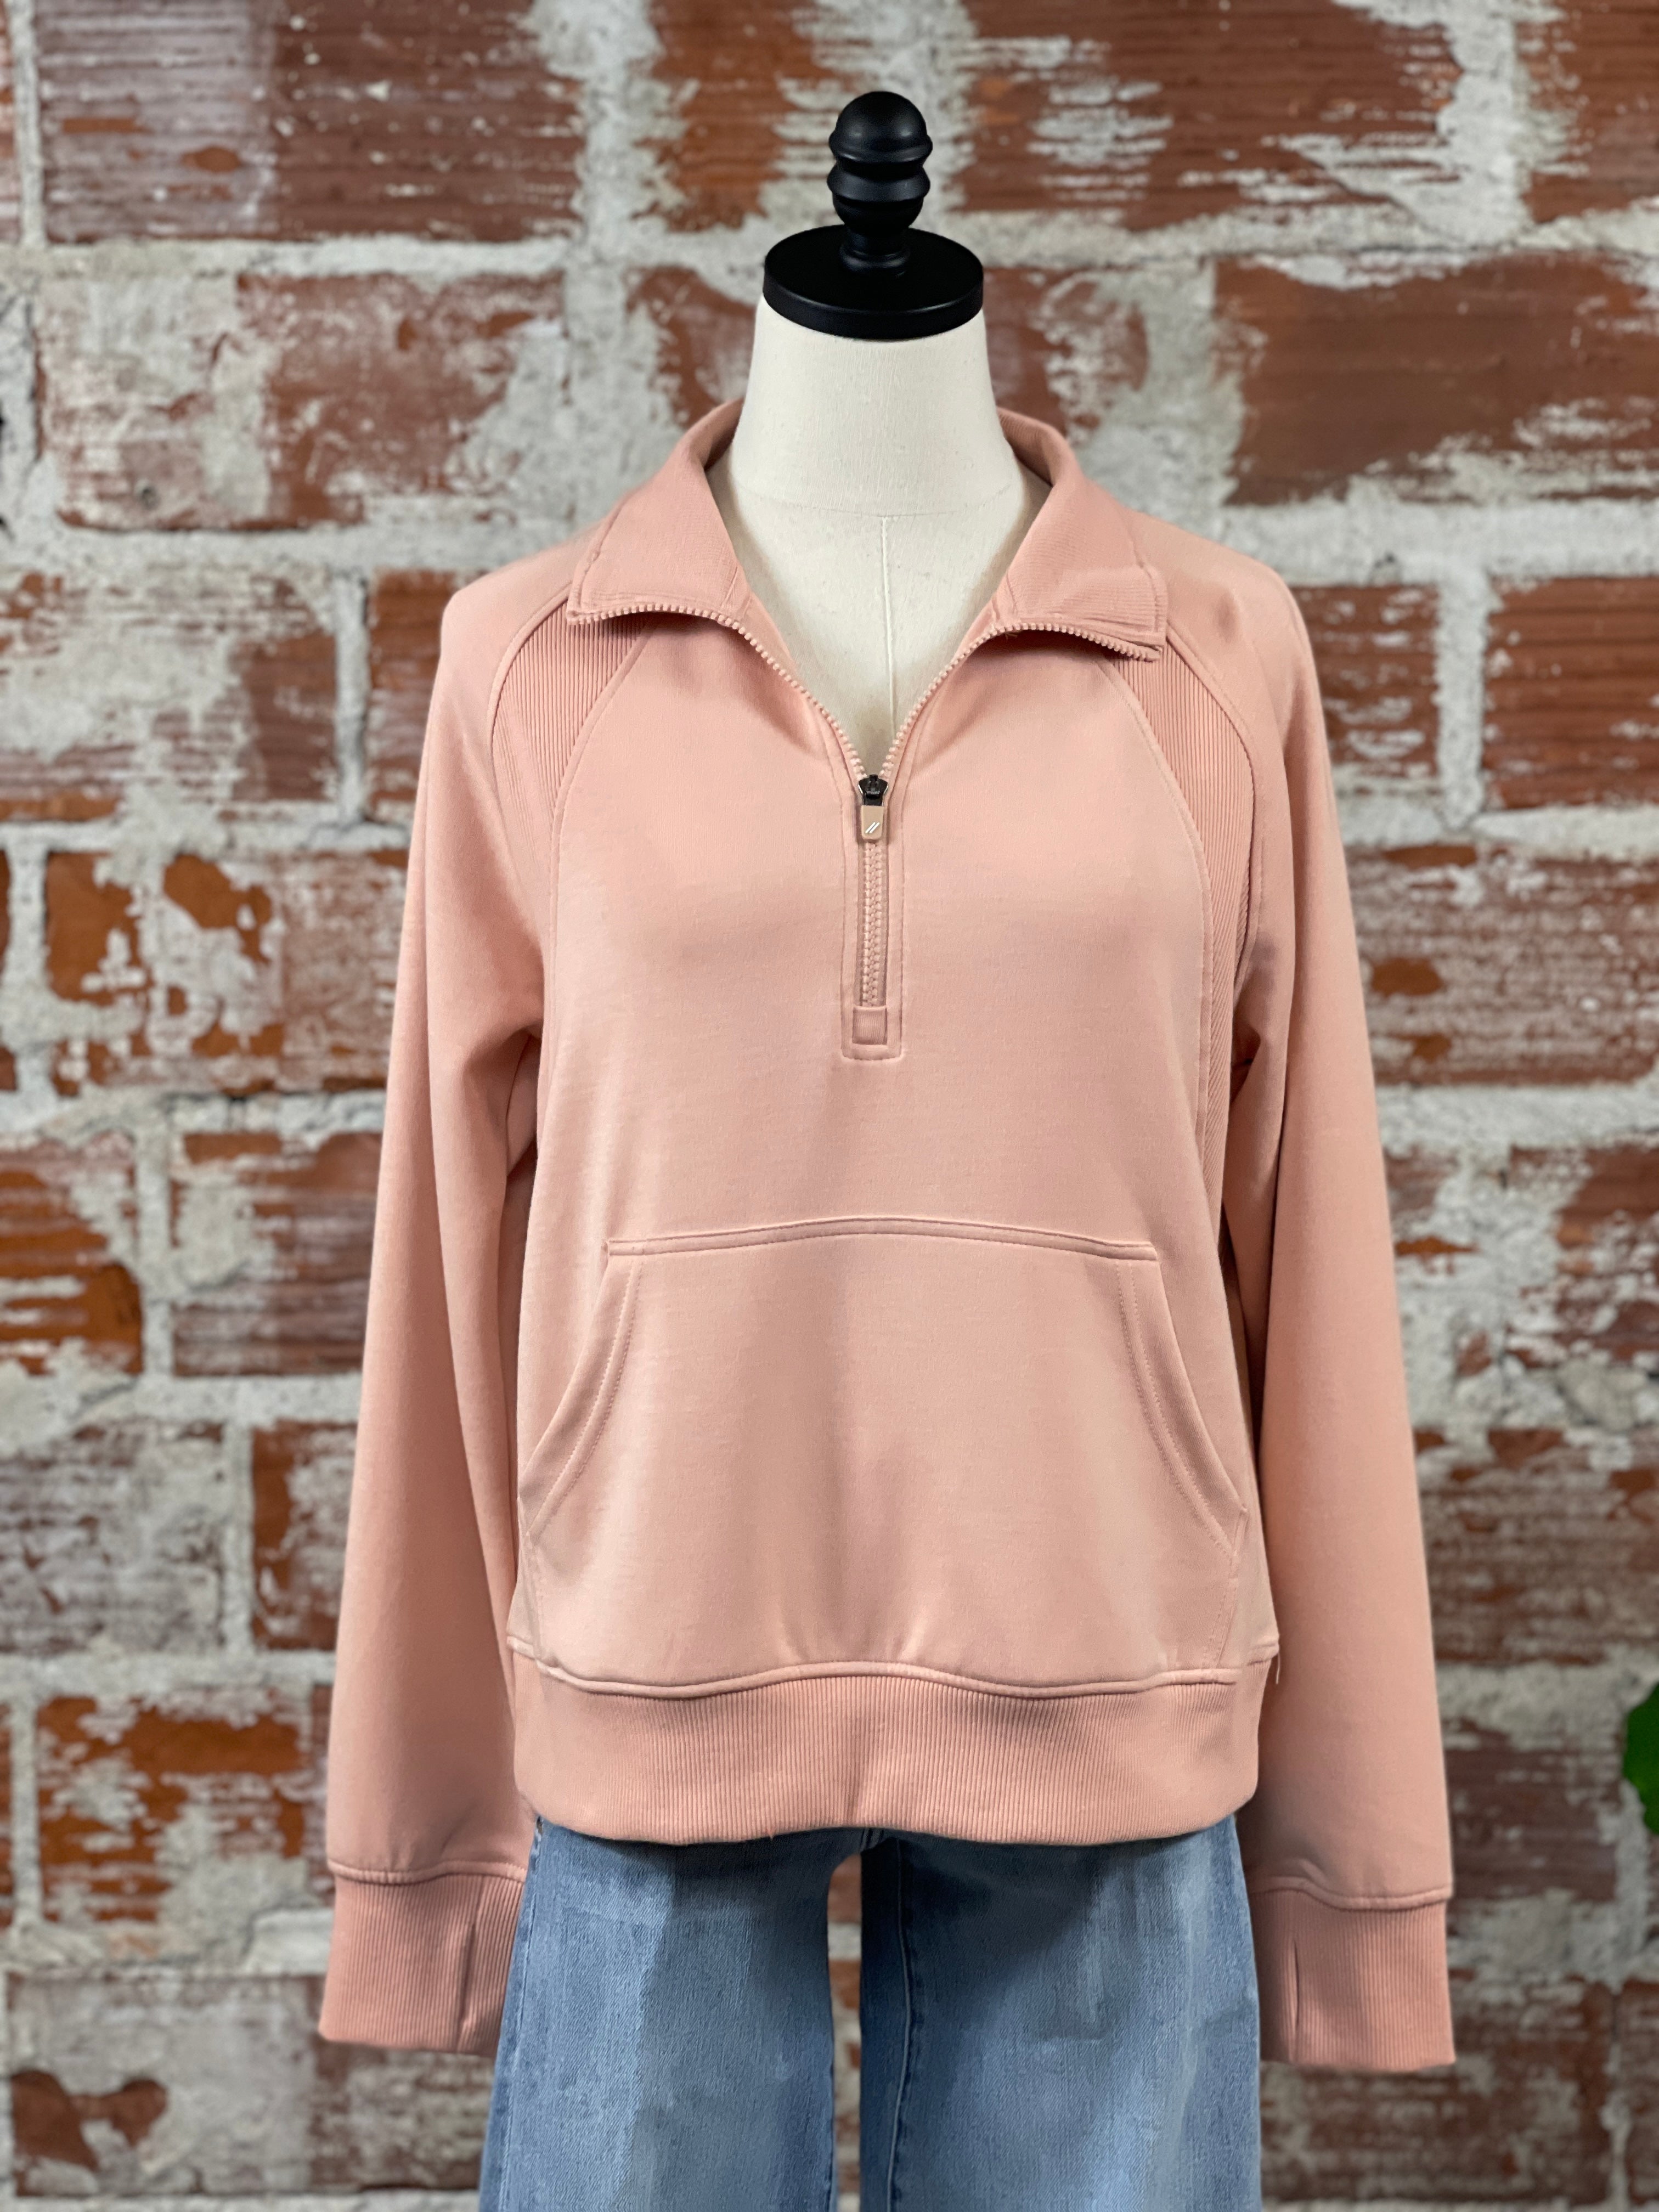 Thread & Supply Angie Jacket in Dusty Peach-142 Sweatshirts & Hoodies-Little Bird Boutique